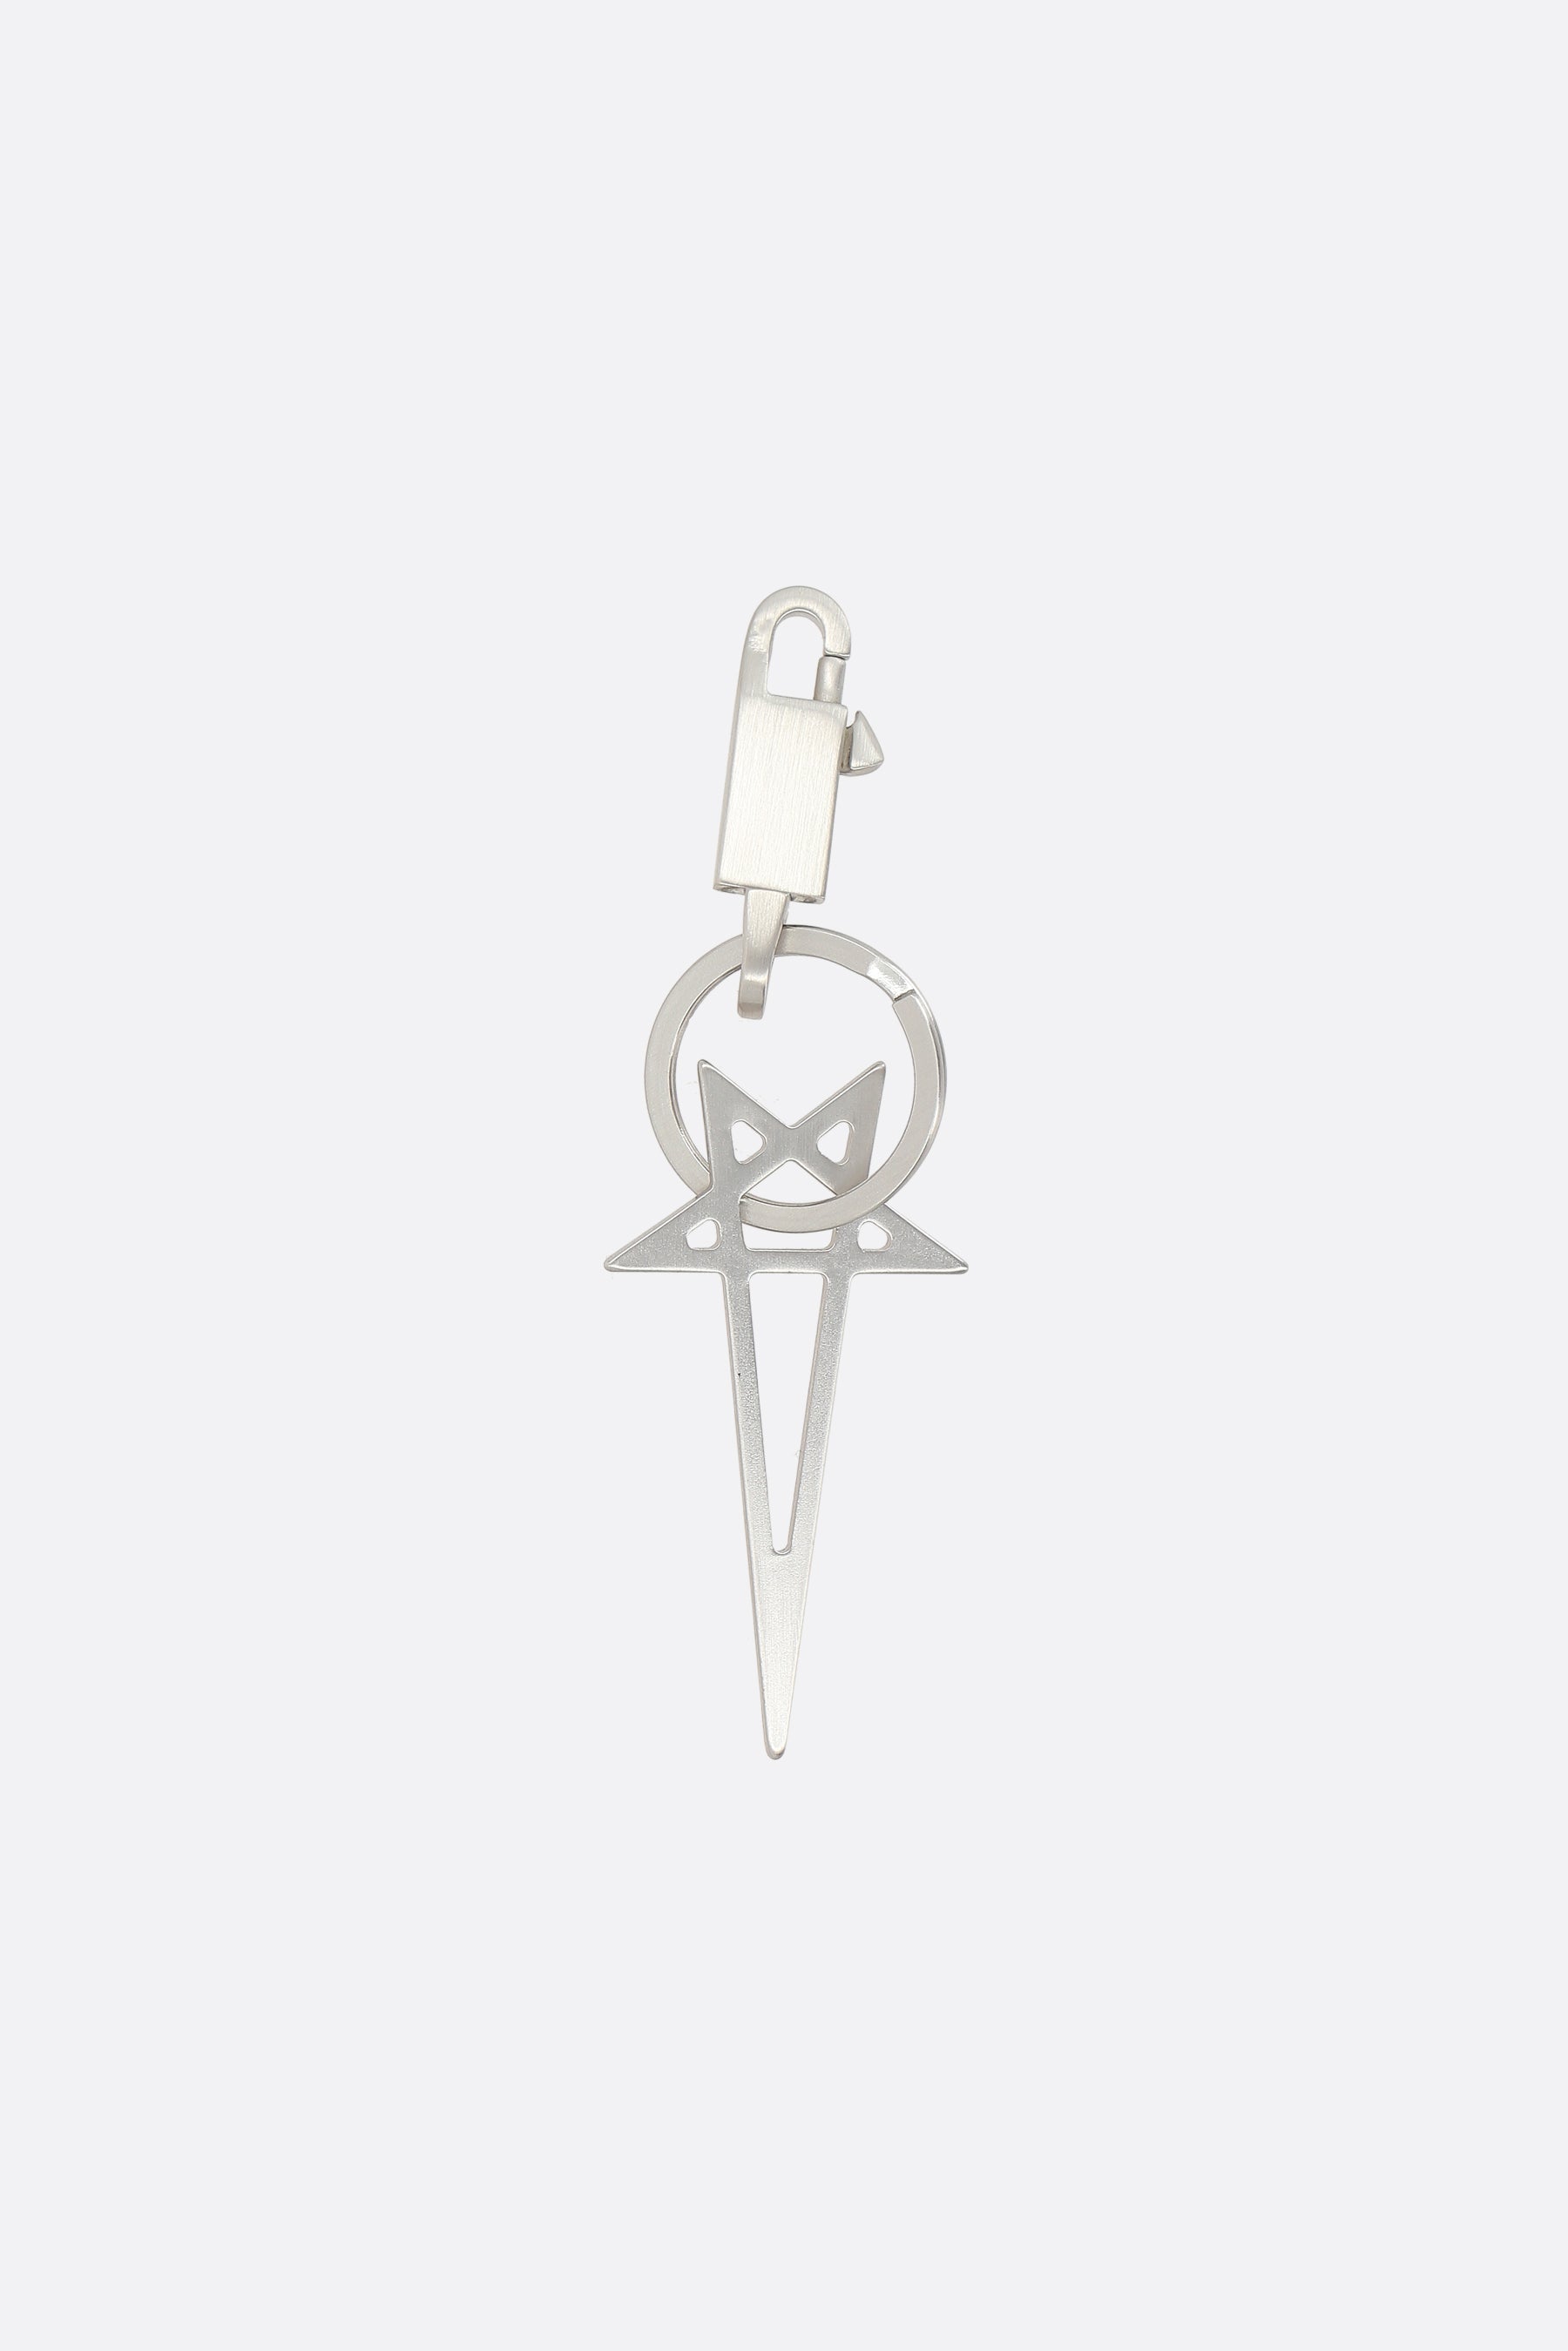 Pentagram brass key holder